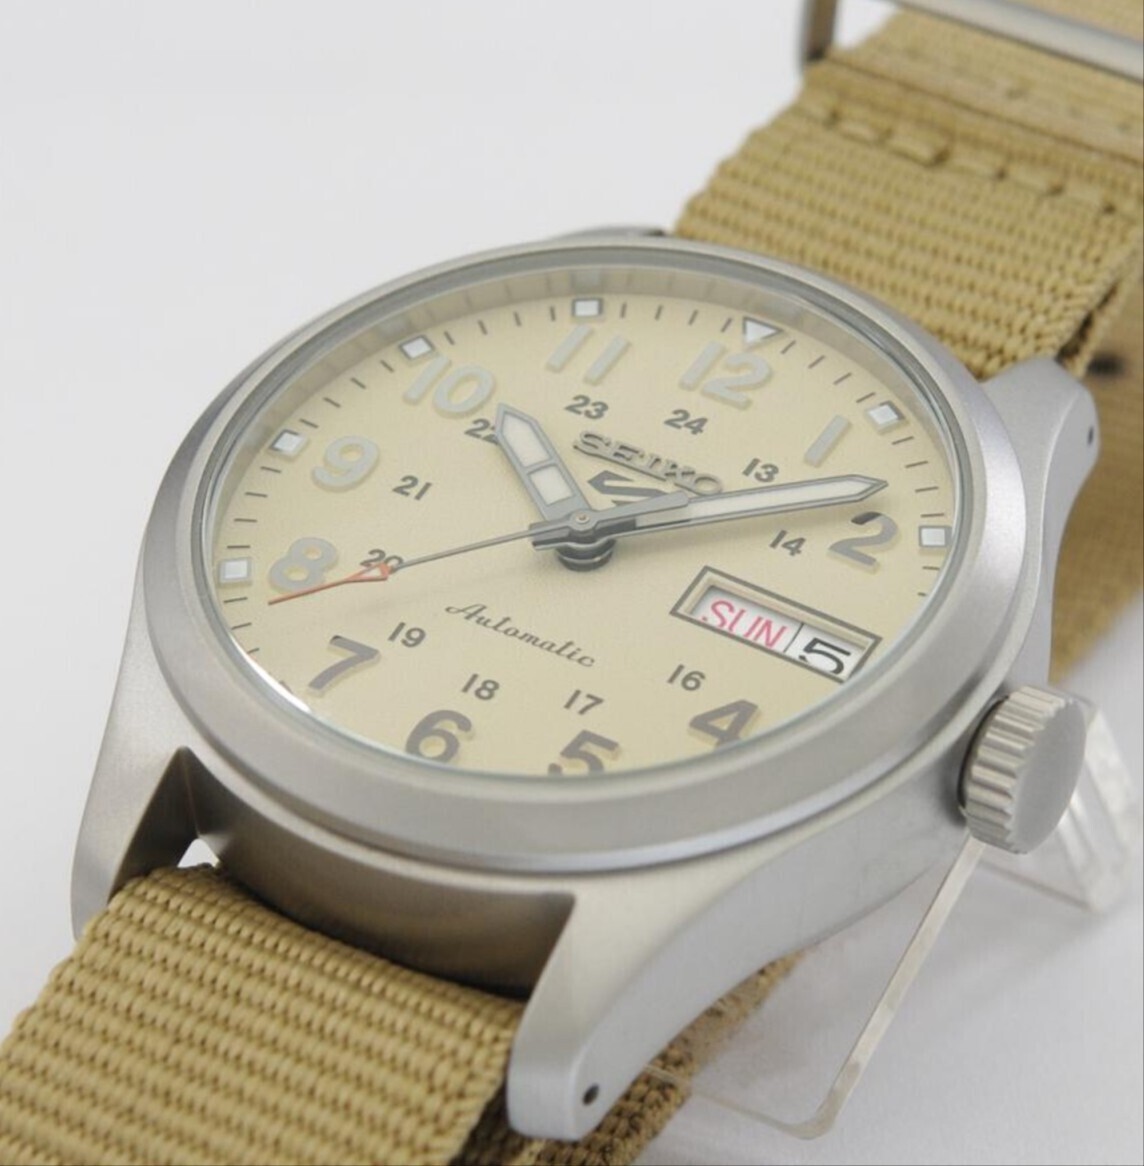 SEIKO セイコー5 スポーツ 日本製 機械式腕時計 海外モデル 自動巻き(手巻付き)カーキ/クリーム SRPJ83K1 逆輸入品　ミリタリー 箱無し発送